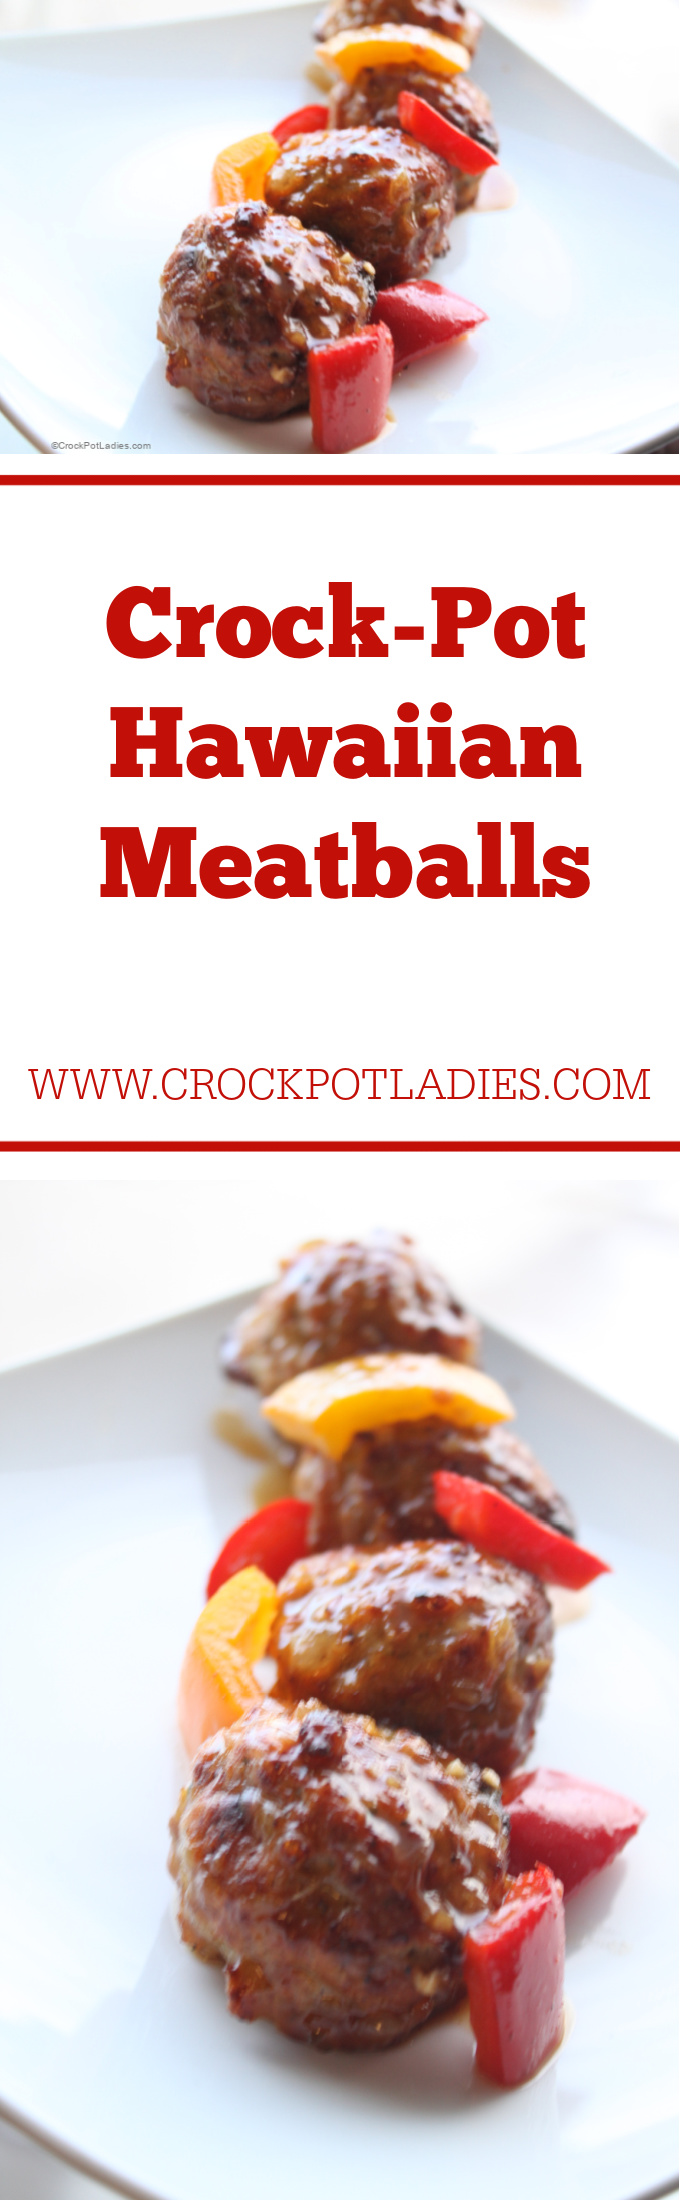 Crock-Pot Hawaiian Meatballs